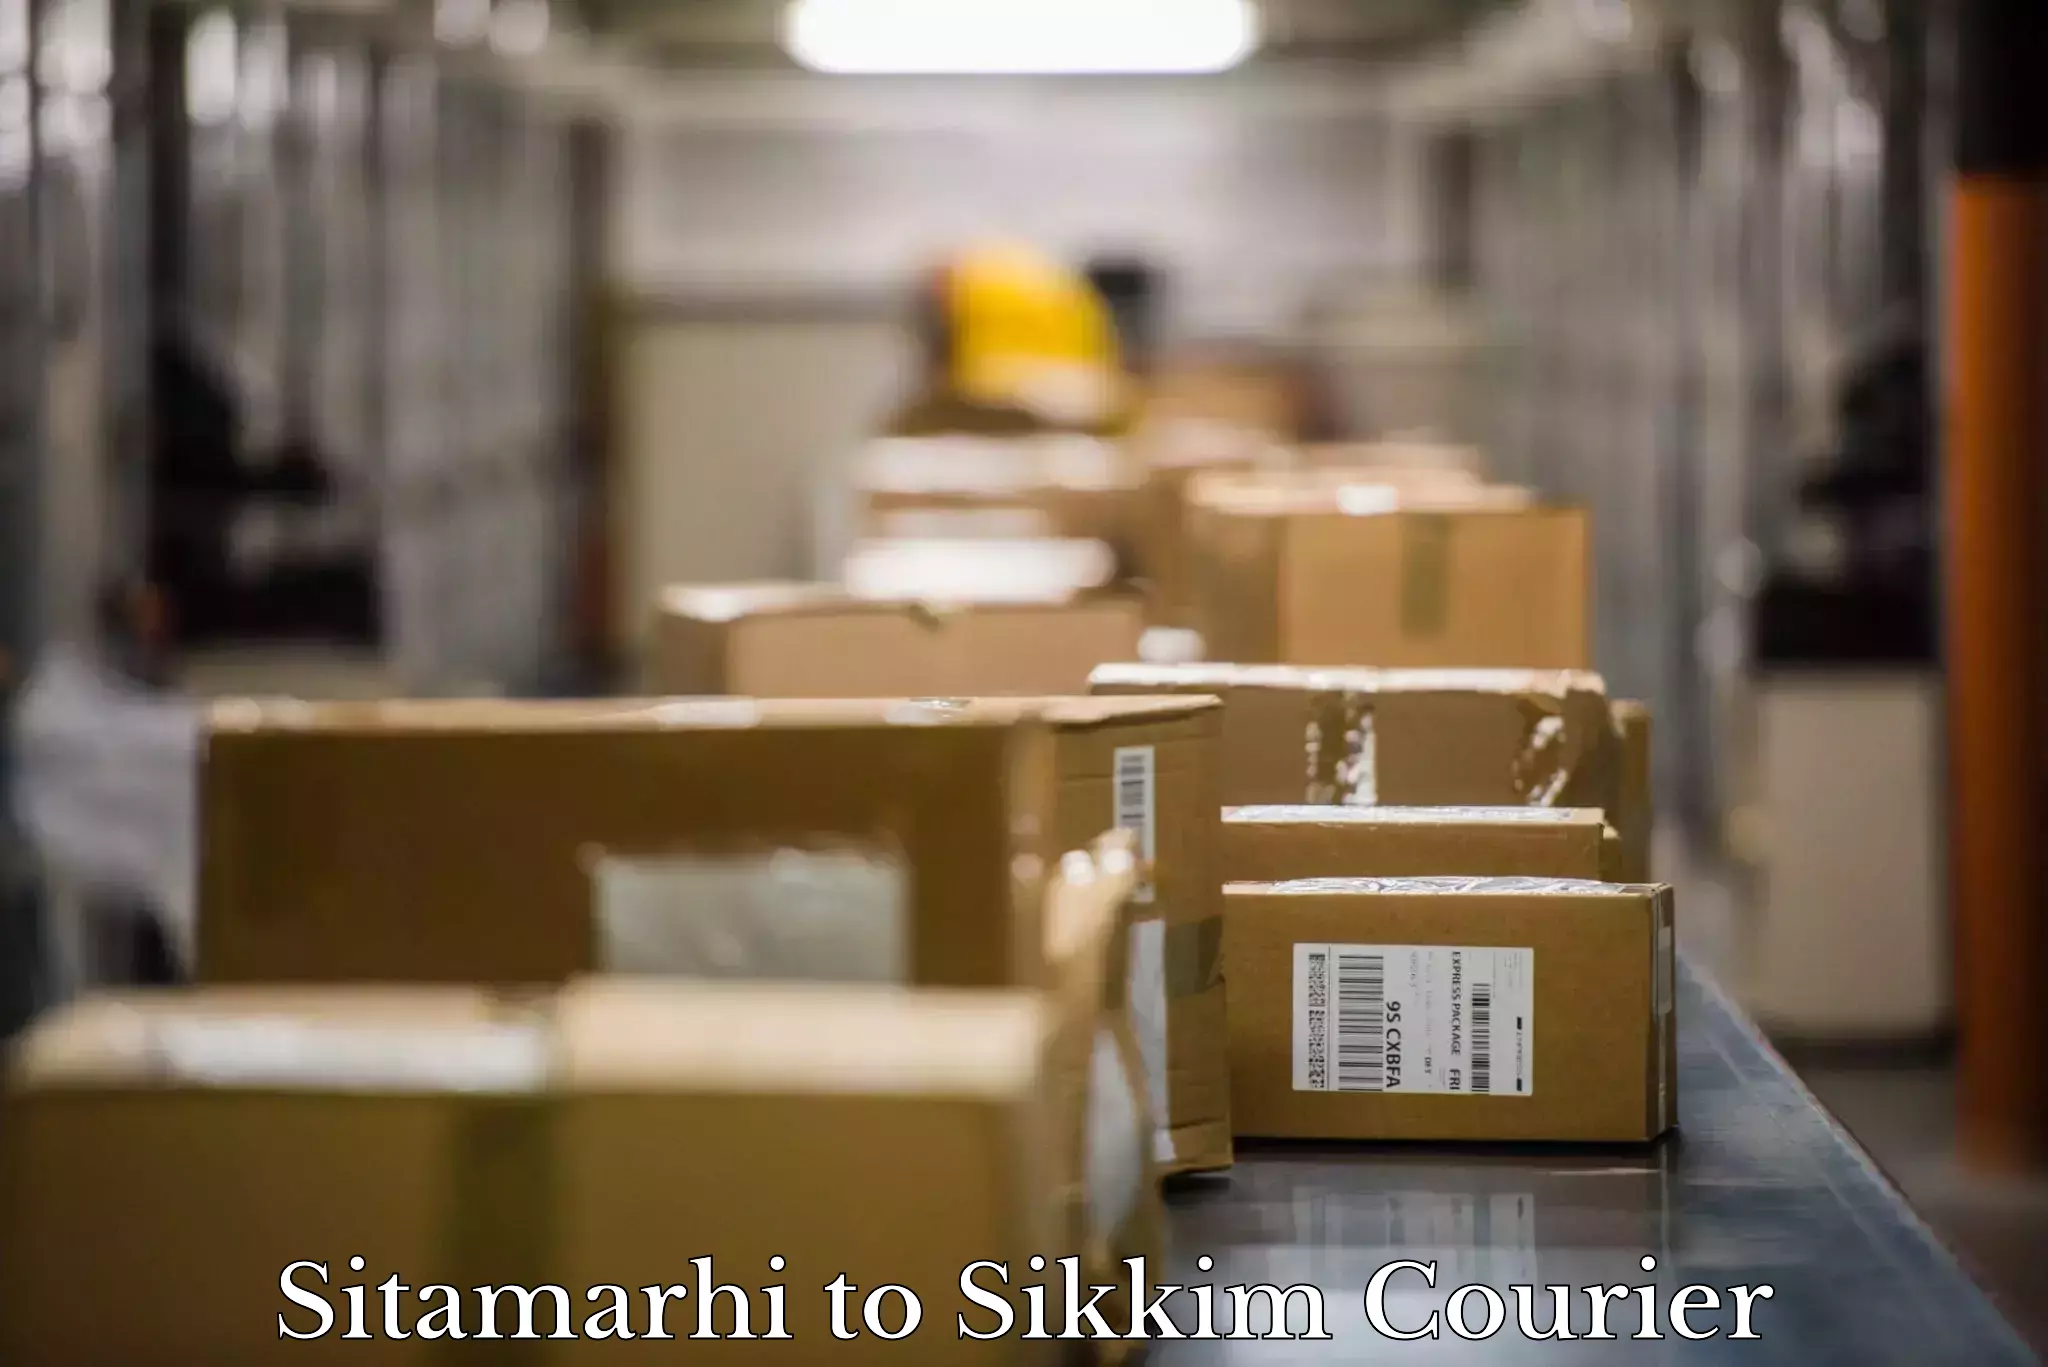 Furniture moving experts Sitamarhi to Mangan